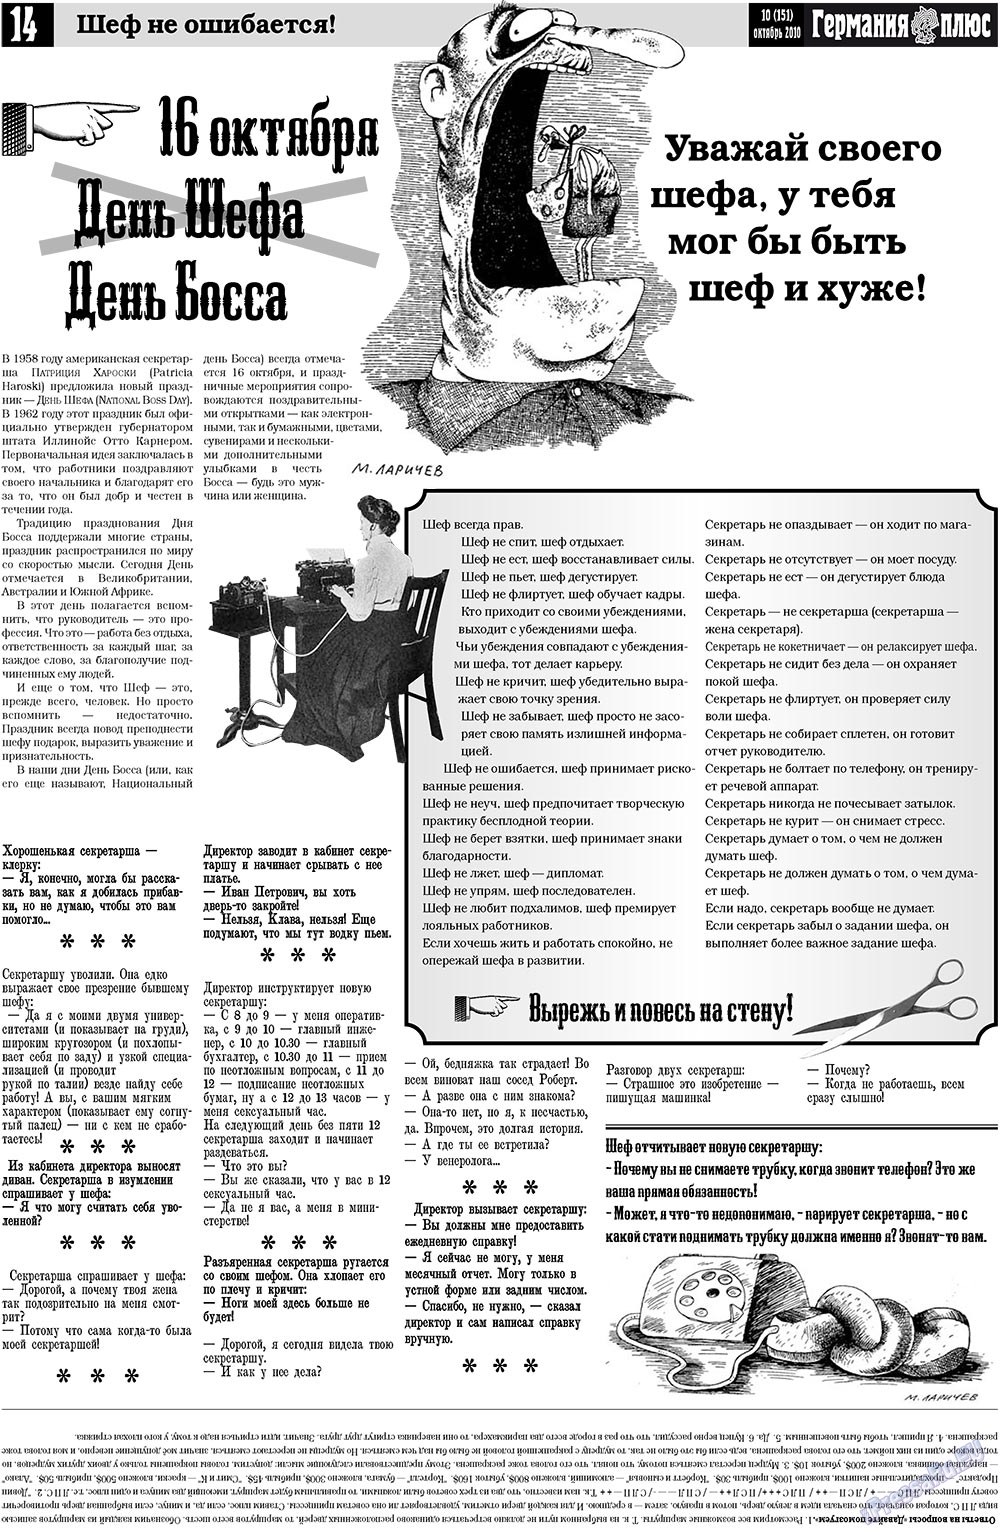 Германия плюс, газета. 2010 №10 стр.14